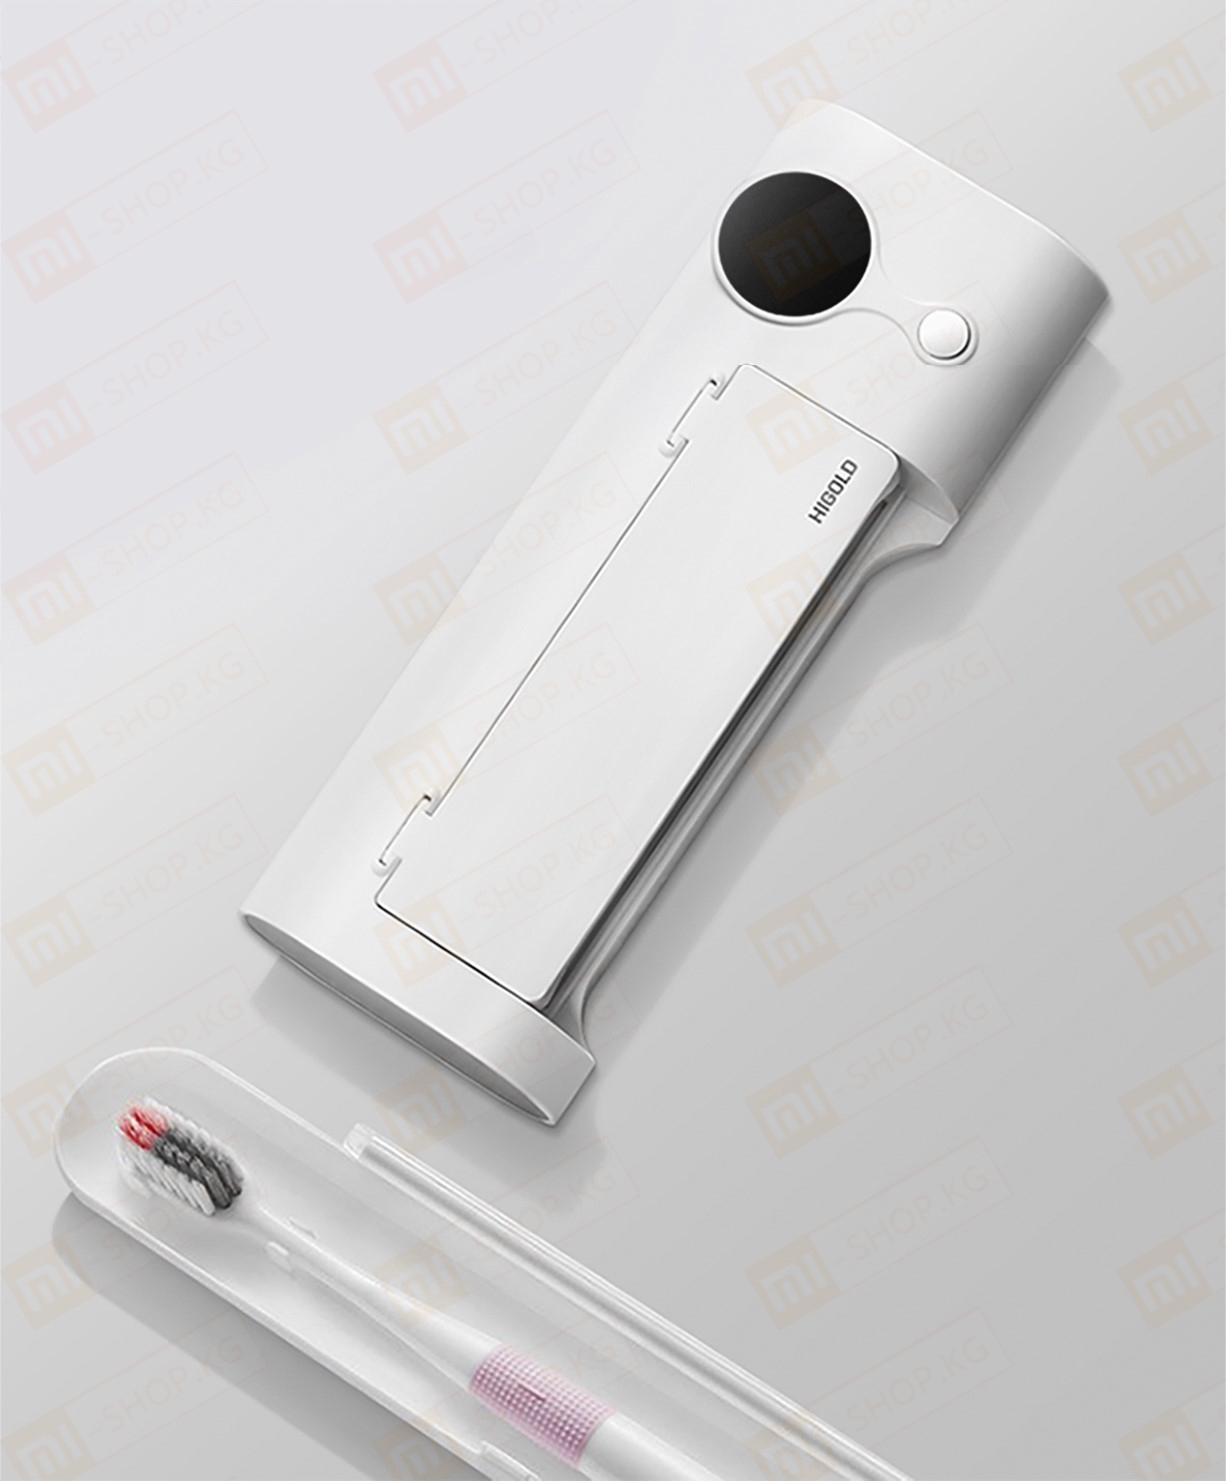 Умный дезинфицирующий держатель для зубных щеток Xiaomi HIGOLD Smart Disinfection Toothbrush Holder (601501) Это держатель для четырех зубных щеток с функцией ультрафиолетовой дезинфекции. В приборе используется фронтальное облучение в сочетании с отражением зеркального отделения для нанесения гальванических покрытий, что обеспечивает всестороннюю стерилизацию. Умный дезинфицирующий держатель для зубных щеток Xiaomi HIGOLD Smart Disinfection Toothbrush Holder (601501) Длительная стерилизация Для поддержания чистоты и гигиены зубной щётки нажмите на кнопку, чтобы включить режим стерилизации 360S длительностью до 6 минут, такая стерилизация не оставляет шансов для размножения бактерий. Нажмите на кнопку ещё раз , чтобы выключить стерилизацию. Умный дезинфицирующий держатель для зубных щеток Xiaomi HIGOLD Smart Disinfection Toothbrush Holder (601501) Всесторонняя стерилизация Умный дезинфицирующий держатель для зубных щеток Xiaomi HIGOLD Smart Disinfection Toothbrush Holder (601501) использует фронтально облучение ультрафиолетовыми лучами в сочетании с отражающим эффектом зеркальной гальванической камеры, для достижения всесторонней стерилизации зубных щёток, не оставляя ни единого шанса для размножения бактерий. Умный дезинфицирующий держатель для зубных щеток Xiaomi HIGOLD Smart Disinfection Toothbrush Holder (601501) Высокоэффективная ультрафиолетовая стерилизация Уничтожают 99,99% бактерий Высокоэффективная ультрафиолетовая стерилизация UVC сделает зубные щетки как новые каждый день. Используется ультрафиолетовый свет с длиной волны 253,7 мм. При его облучении разрушается ДНК микроорганизмов, так что они не смогут размножаться и погибнут. Уровень эффективности UVC достигает 99%. Умный дезинфицирующий держатель для зубных щеток Xiaomi HIGOLD Smart Disinfection Toothbrush Holder (601501) Безопасное использование Держатель спроектирован под четыре слота для зубных щеток. Расстояние между щетками достаточное, чтобы они не соприкасались, что позволит избежать дополнительного размножения бактерий. Устройство обладает системой защиты. Если во время дезинфекции открыть крышку, то машина автоматически прекратит работу и отключит ультрафиолетовое излучение. Когда крышка открыта, то вместо таймера начинает мигать слово OPN (от слова «Open» — открыто). После закрытия крышки, надпись меняется на таймер, и устройство продолжит дезинфекцию. Умный дезинфицирующий держатель для зубных щеток Xiaomi HIGOLD Smart Disinfection Toothbrush Holder (601501) Автономная работа и зарядка Держатель оснащён встроенным аккумулятором емкостью 1500 мАч, которого хватает примерно на 20 дней автономной работы. Зарядка осуществляется через порт Micro USB и до полного заряда аккумулятора потребуется 5 часов. Умный дезинфицирующий держатель для зубных щеток Xiaomi HIGOLD Smart Disinfection Toothbrush Holder (601501) Лёгкая чистка Подставка для зубных щеток может быть снята и очищена отдельно от всей конструкции. Умный дезинфицирующий держатель для зубных щеток Xiaomi HIGOLD Smart Disinfection Toothbrush Holder (601501) Установка без перфорации Монтаж не оставляет следов, подходит для любой стены Прочная наклейка 3M устойчиво фиксируется на стене. Гнездо для съемного держателя зубной щетки* легко снимается для очистки. Когда требуется зарядка, можно легко и безопасно снять стерилизатор с наклейки на стене. Умный дезинфицирующий держатель для зубных щеток Xiaomi HIGOLD Smart Disinfection Toothbrush Holder (601501) Умный дезинфицирующий держатель для зубных щеток Xiaomi HIGOLD Smart Disinfection Toothbrush Holder (601501) Умный дезинфицирующий держатель для зубных щеток Xiaomi HIGOLD Smart Disinfection Toothbrush Holder (601501) Умный дезинфицирующий держатель для зубных щеток Xiaomi HIGOLD Smart Disinfection Toothbrush Holder (601501)